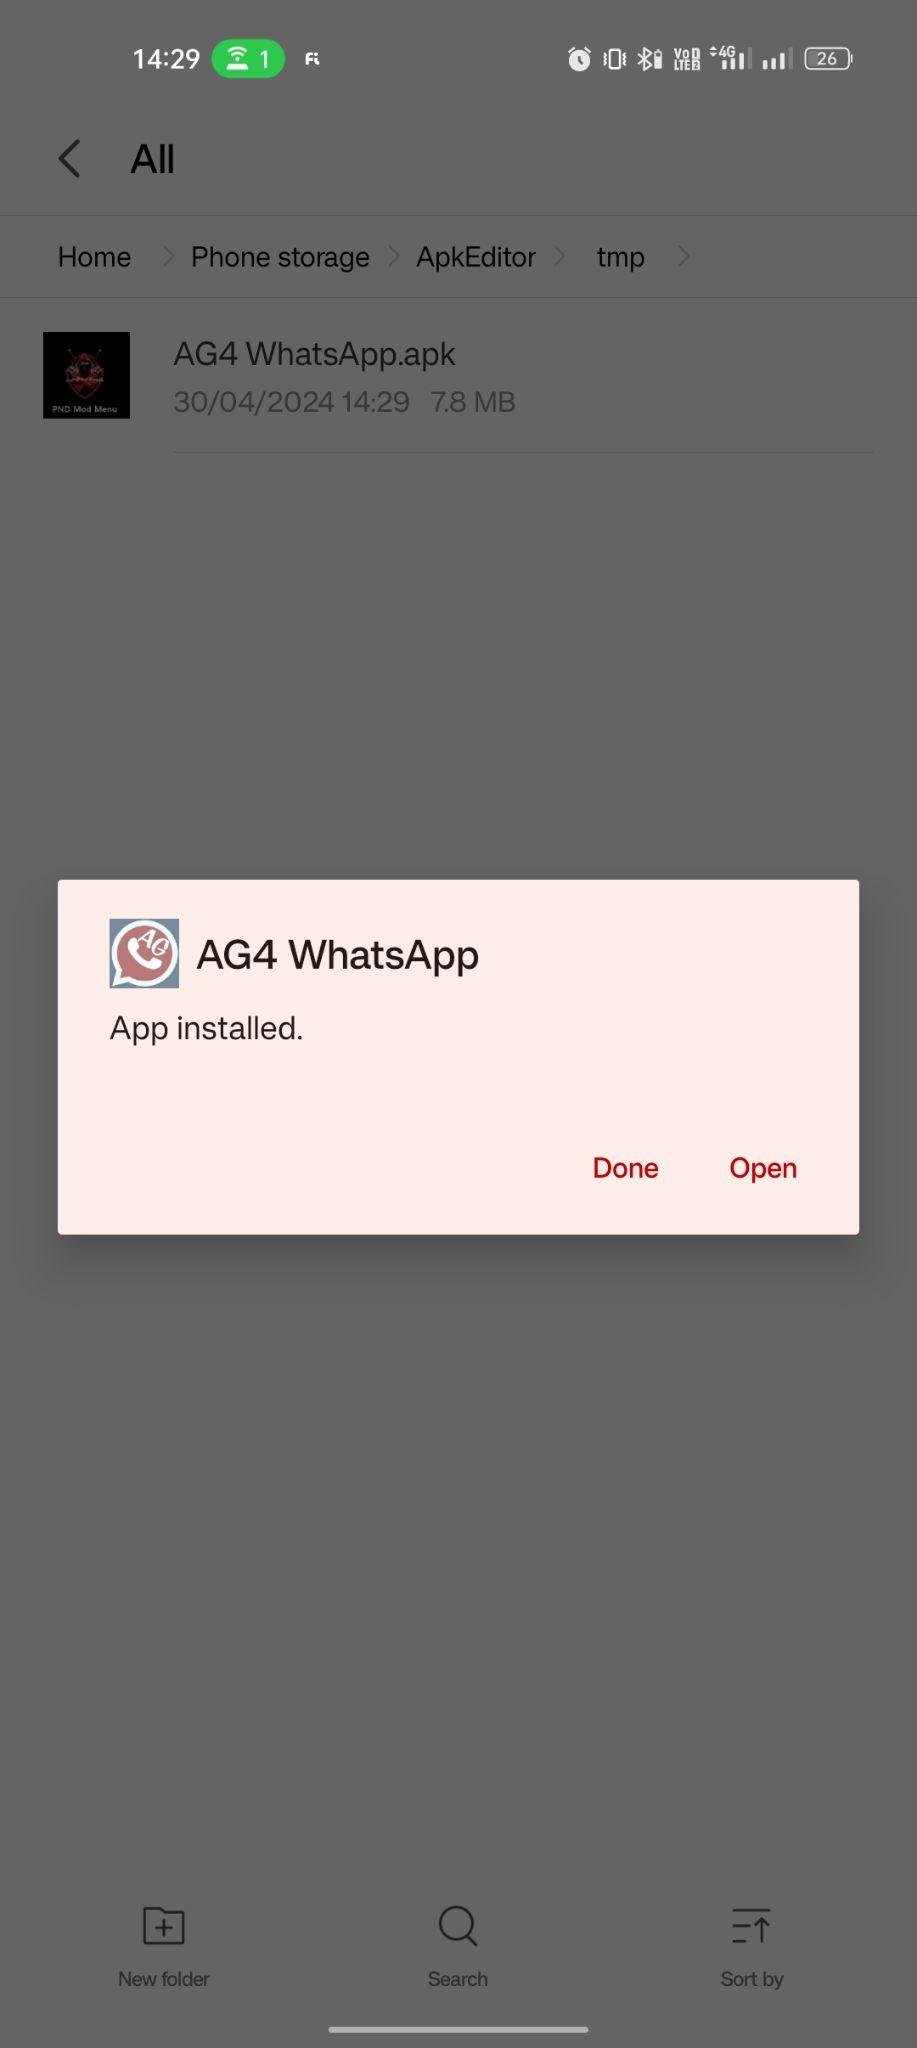 AG4 WhatsApp apk installed